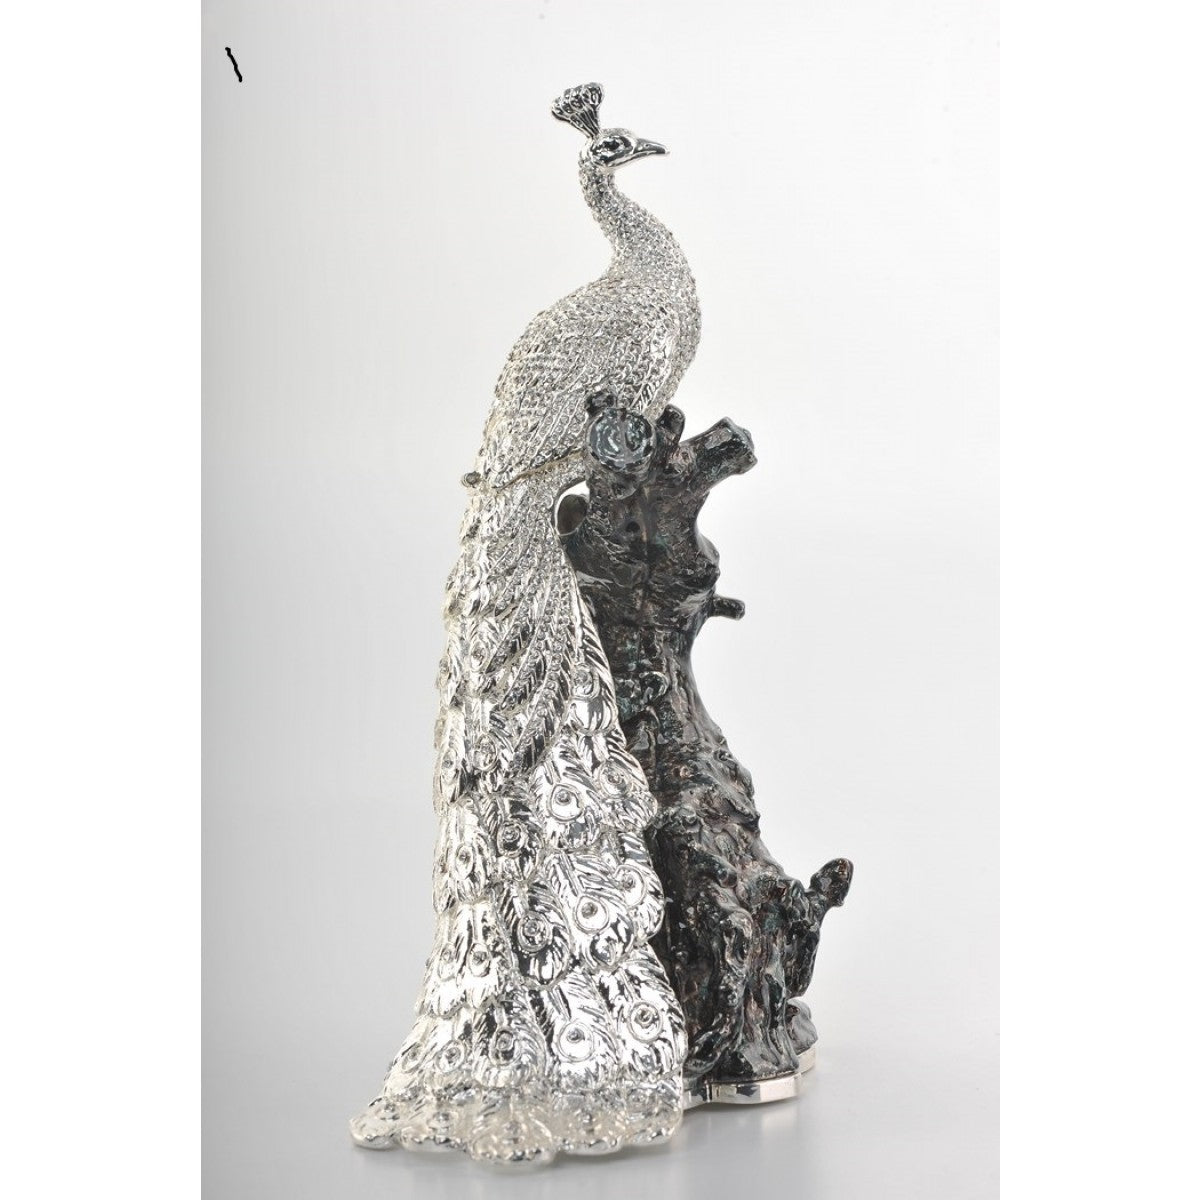 Silver Peacock by Keren Kopal